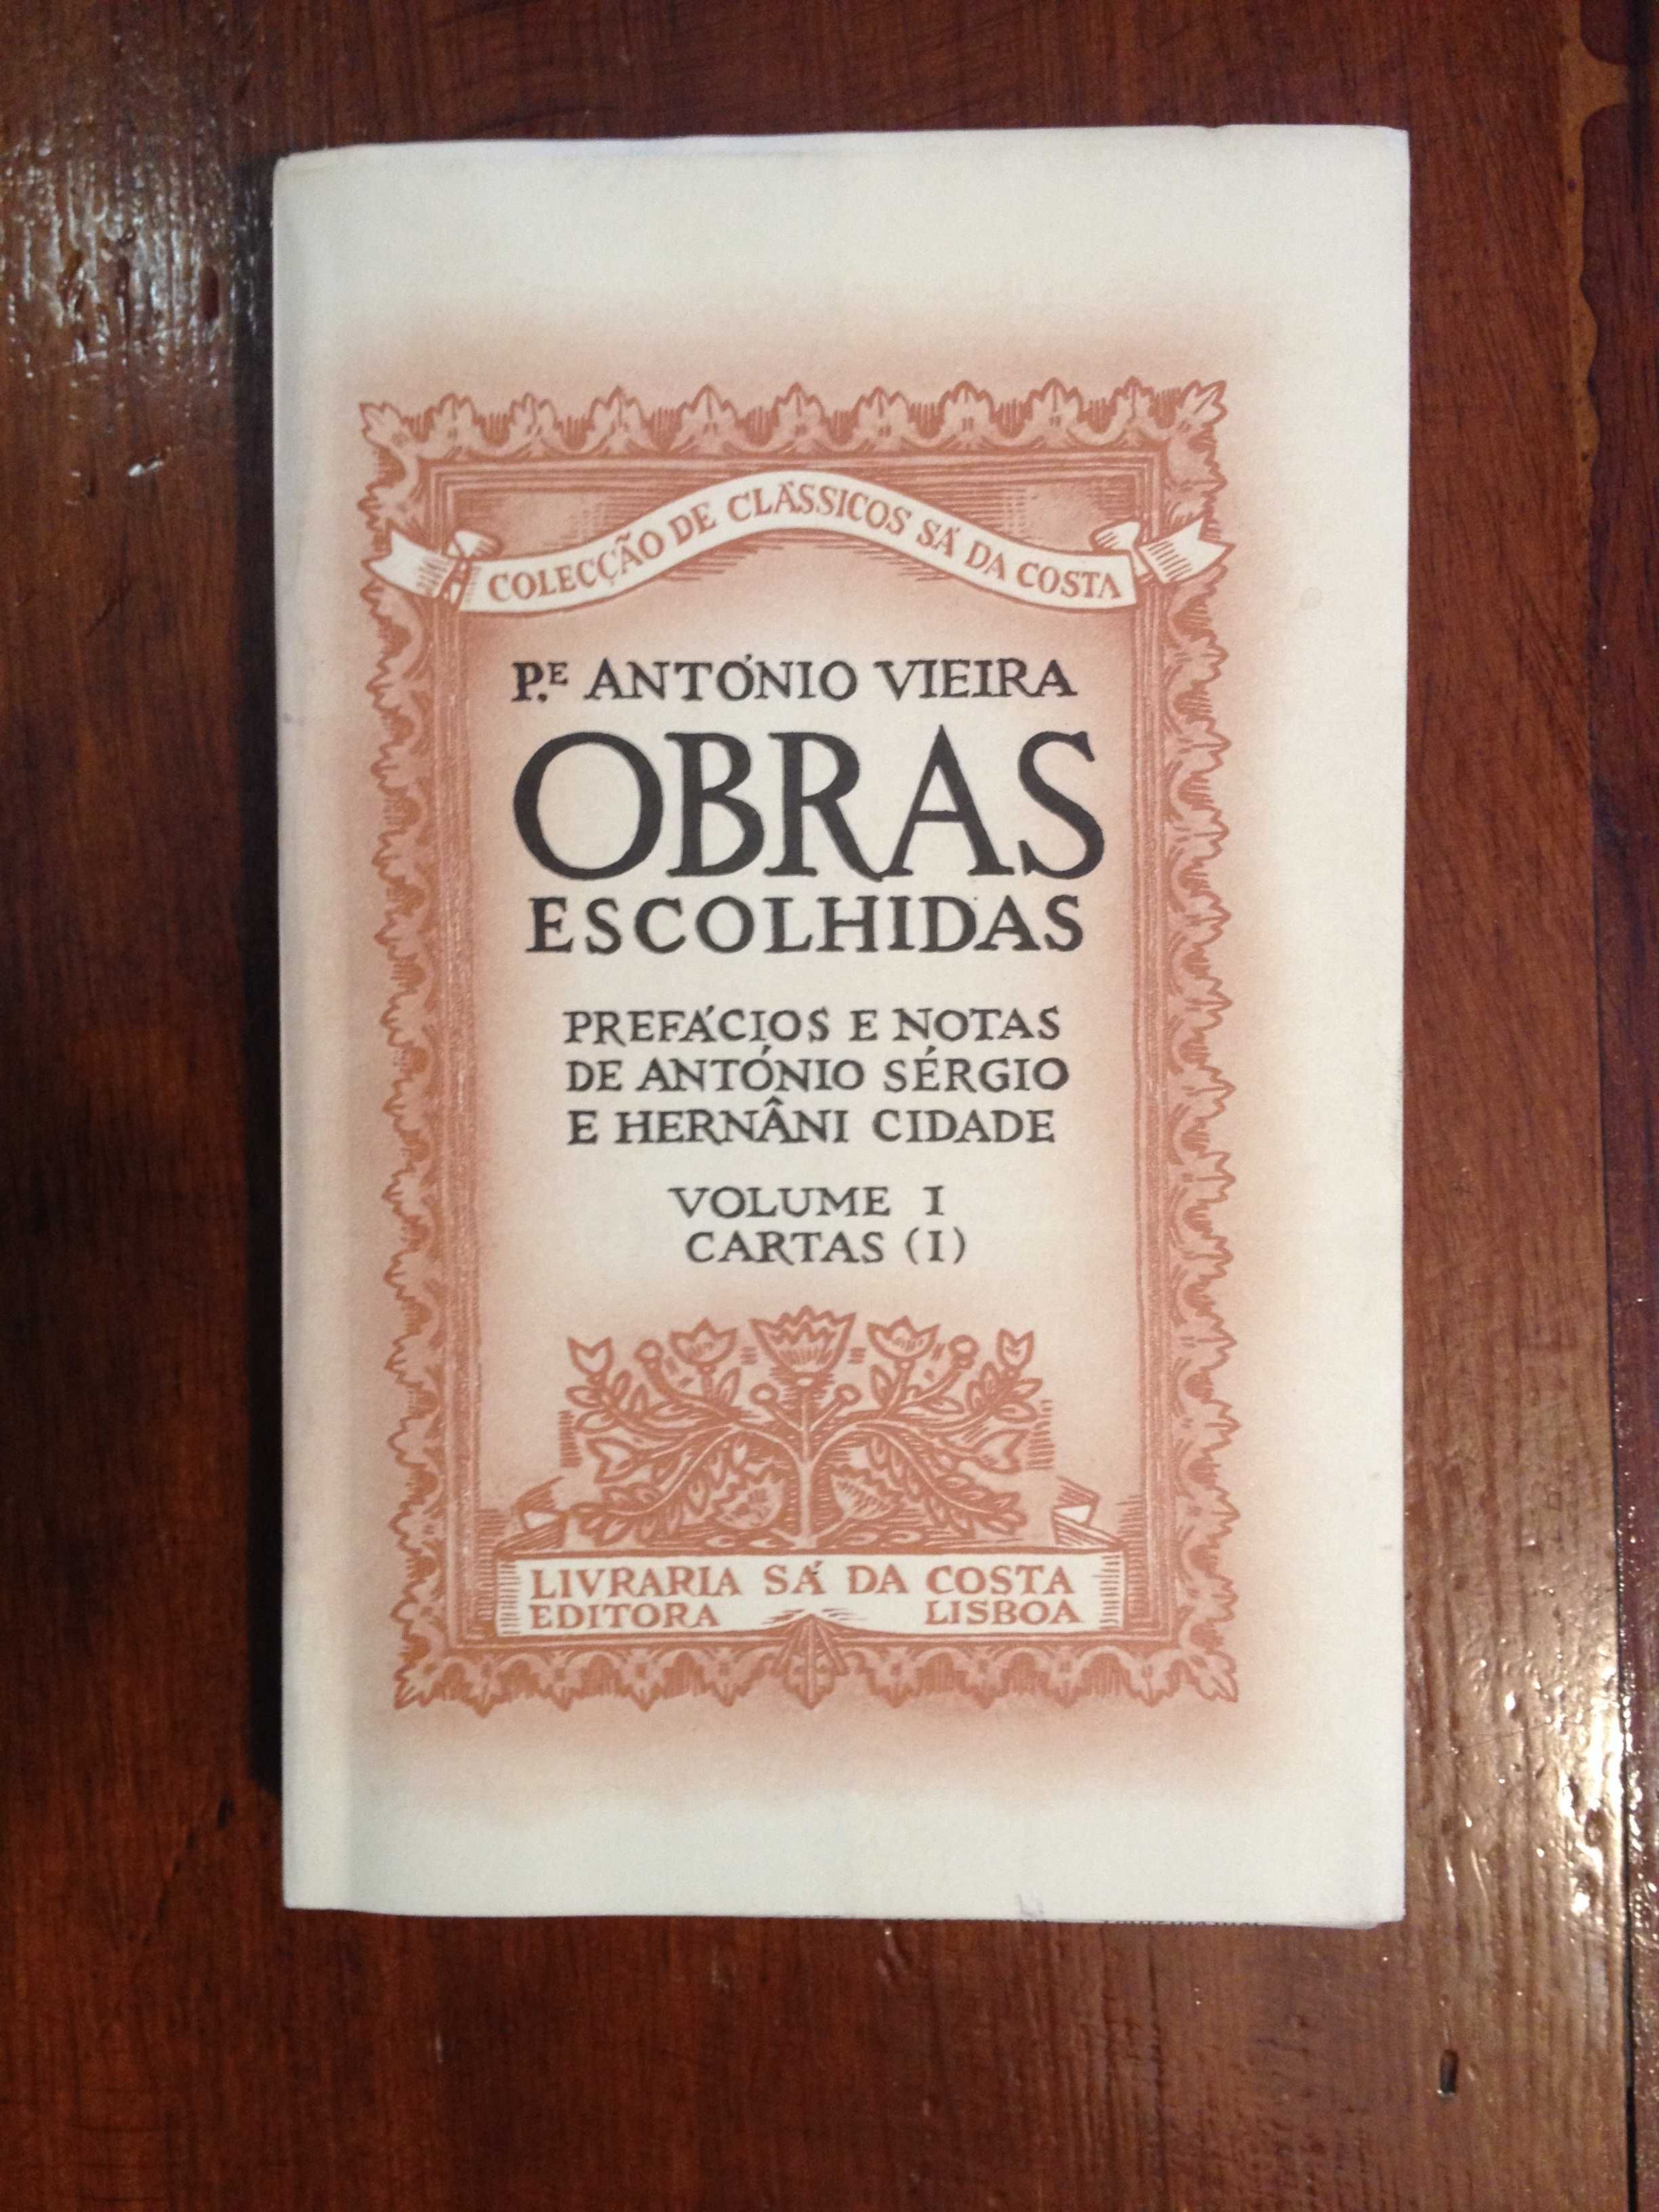 Padre António Vieira - Obras escolhidas Vol. I